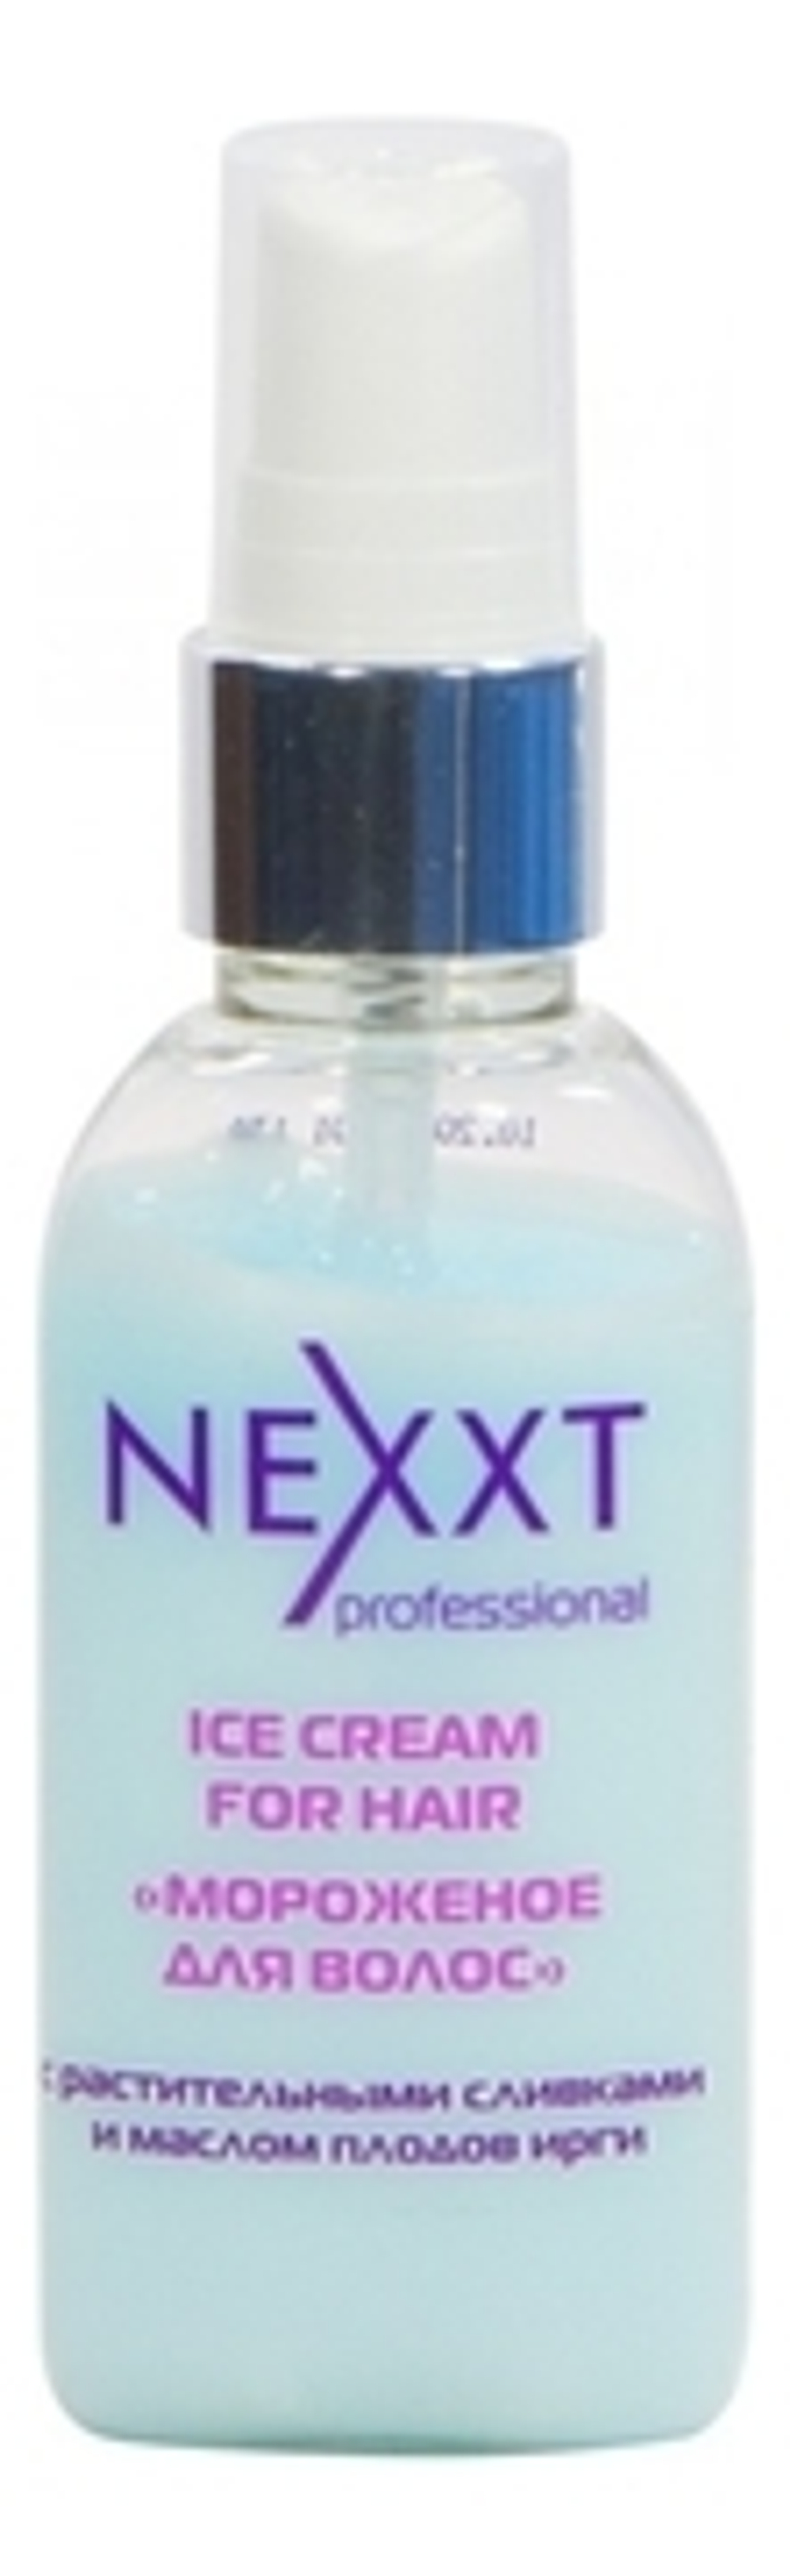 Nexxt Professional Флюид сливочный Мороженое для волос, 50 мл